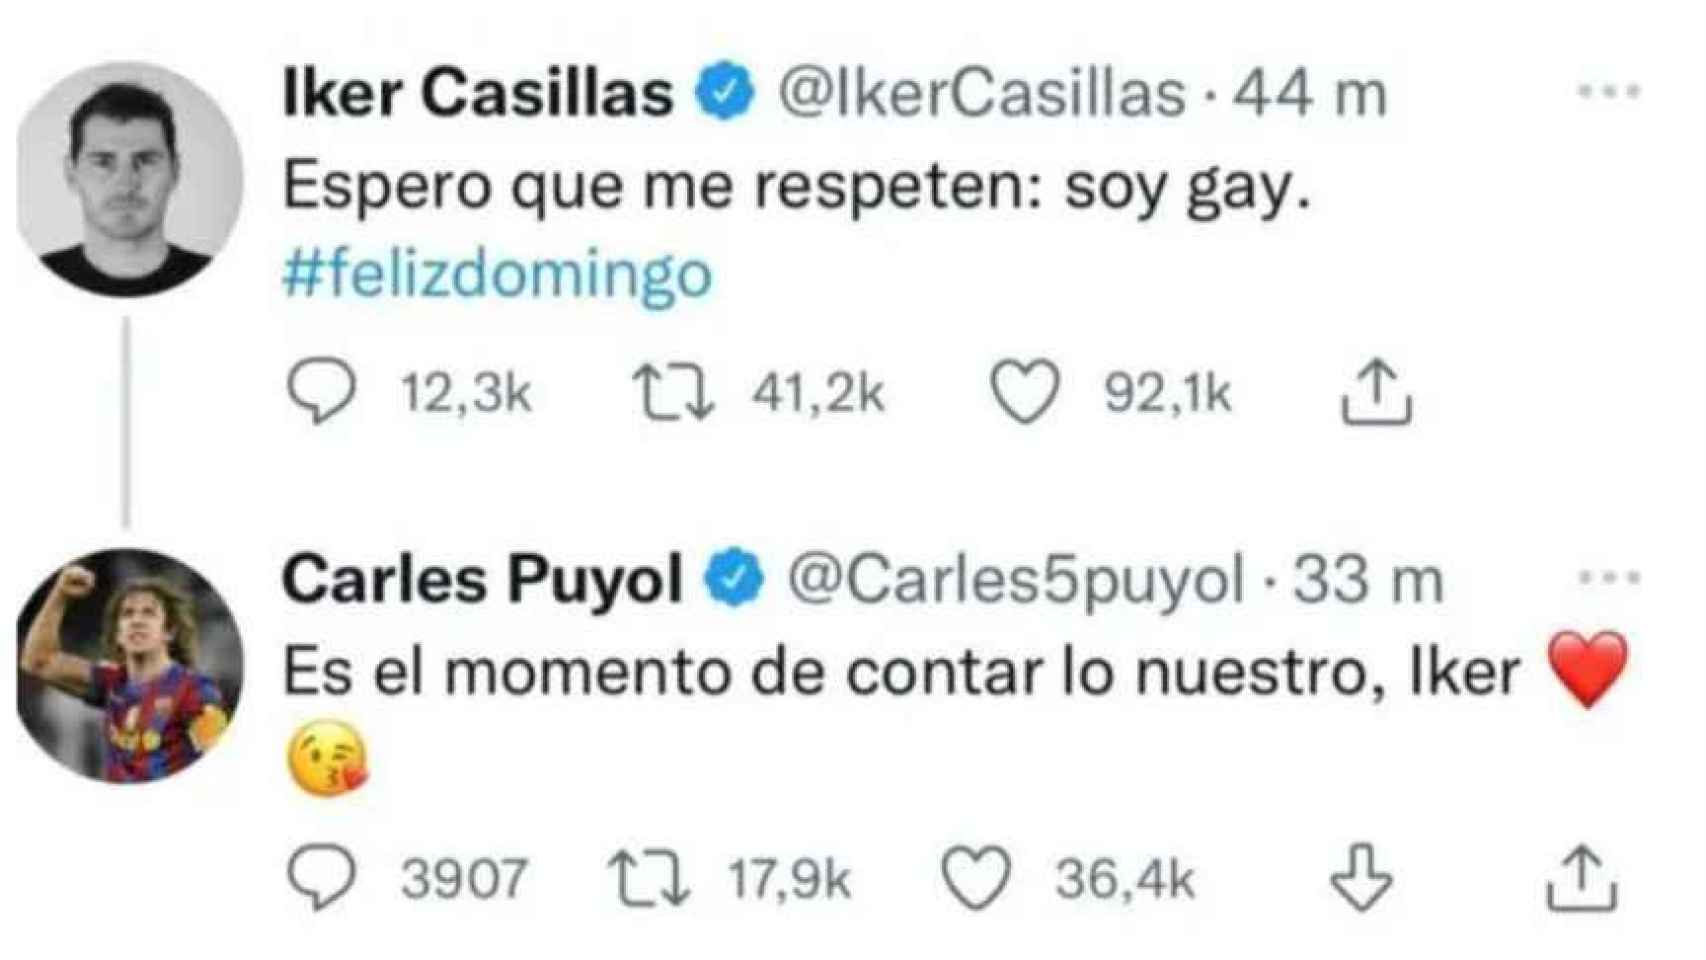 El mensaje publicado por Iker Casillas en su cuenta de Twitter y la inmediata respuesta de Carles Puyol.